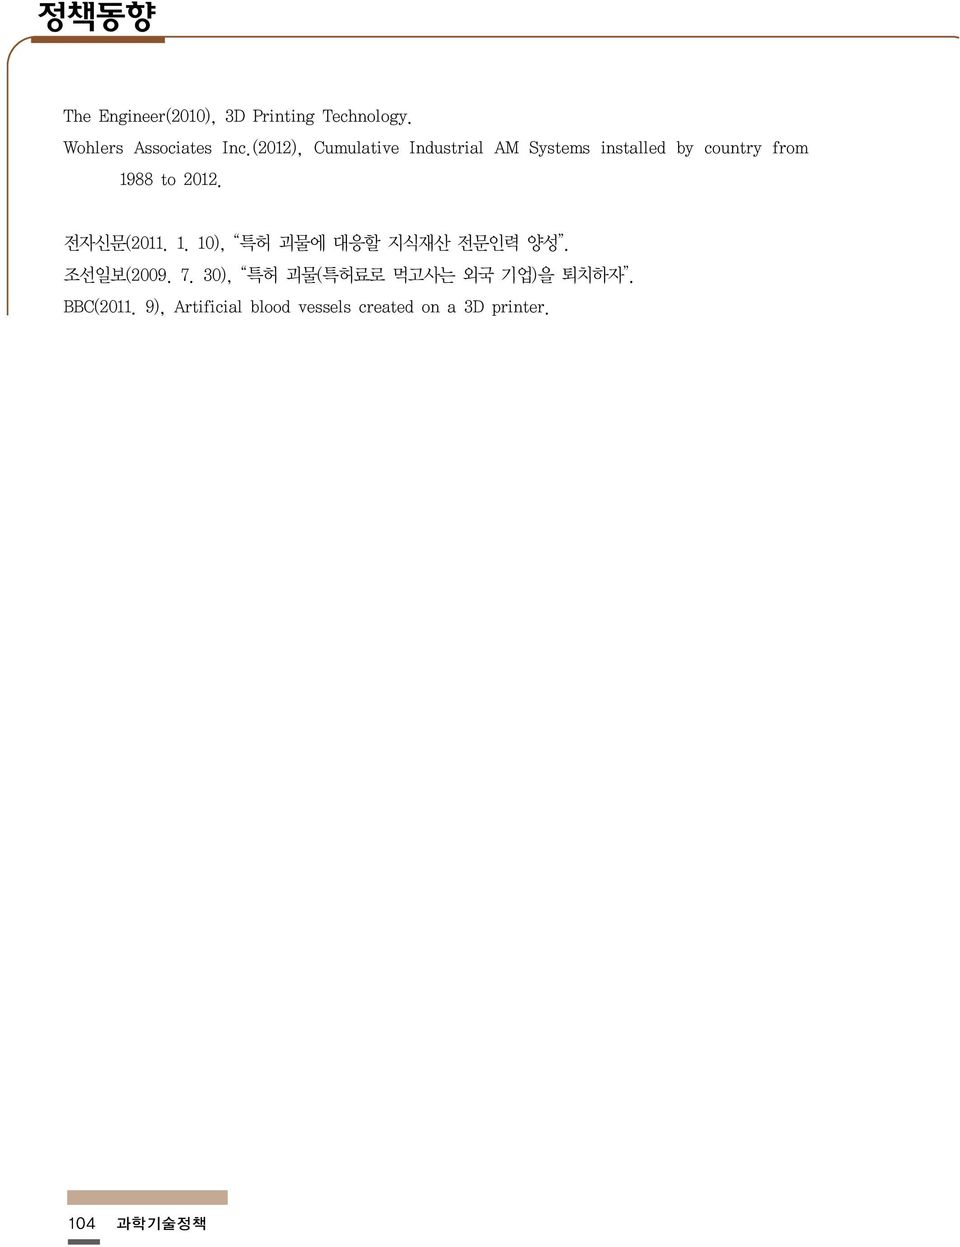 전자신문(2011. 1. 10), 특허 괴물에 대응할 지식재산 전문인력 양성. 조선일보(2009. 7.